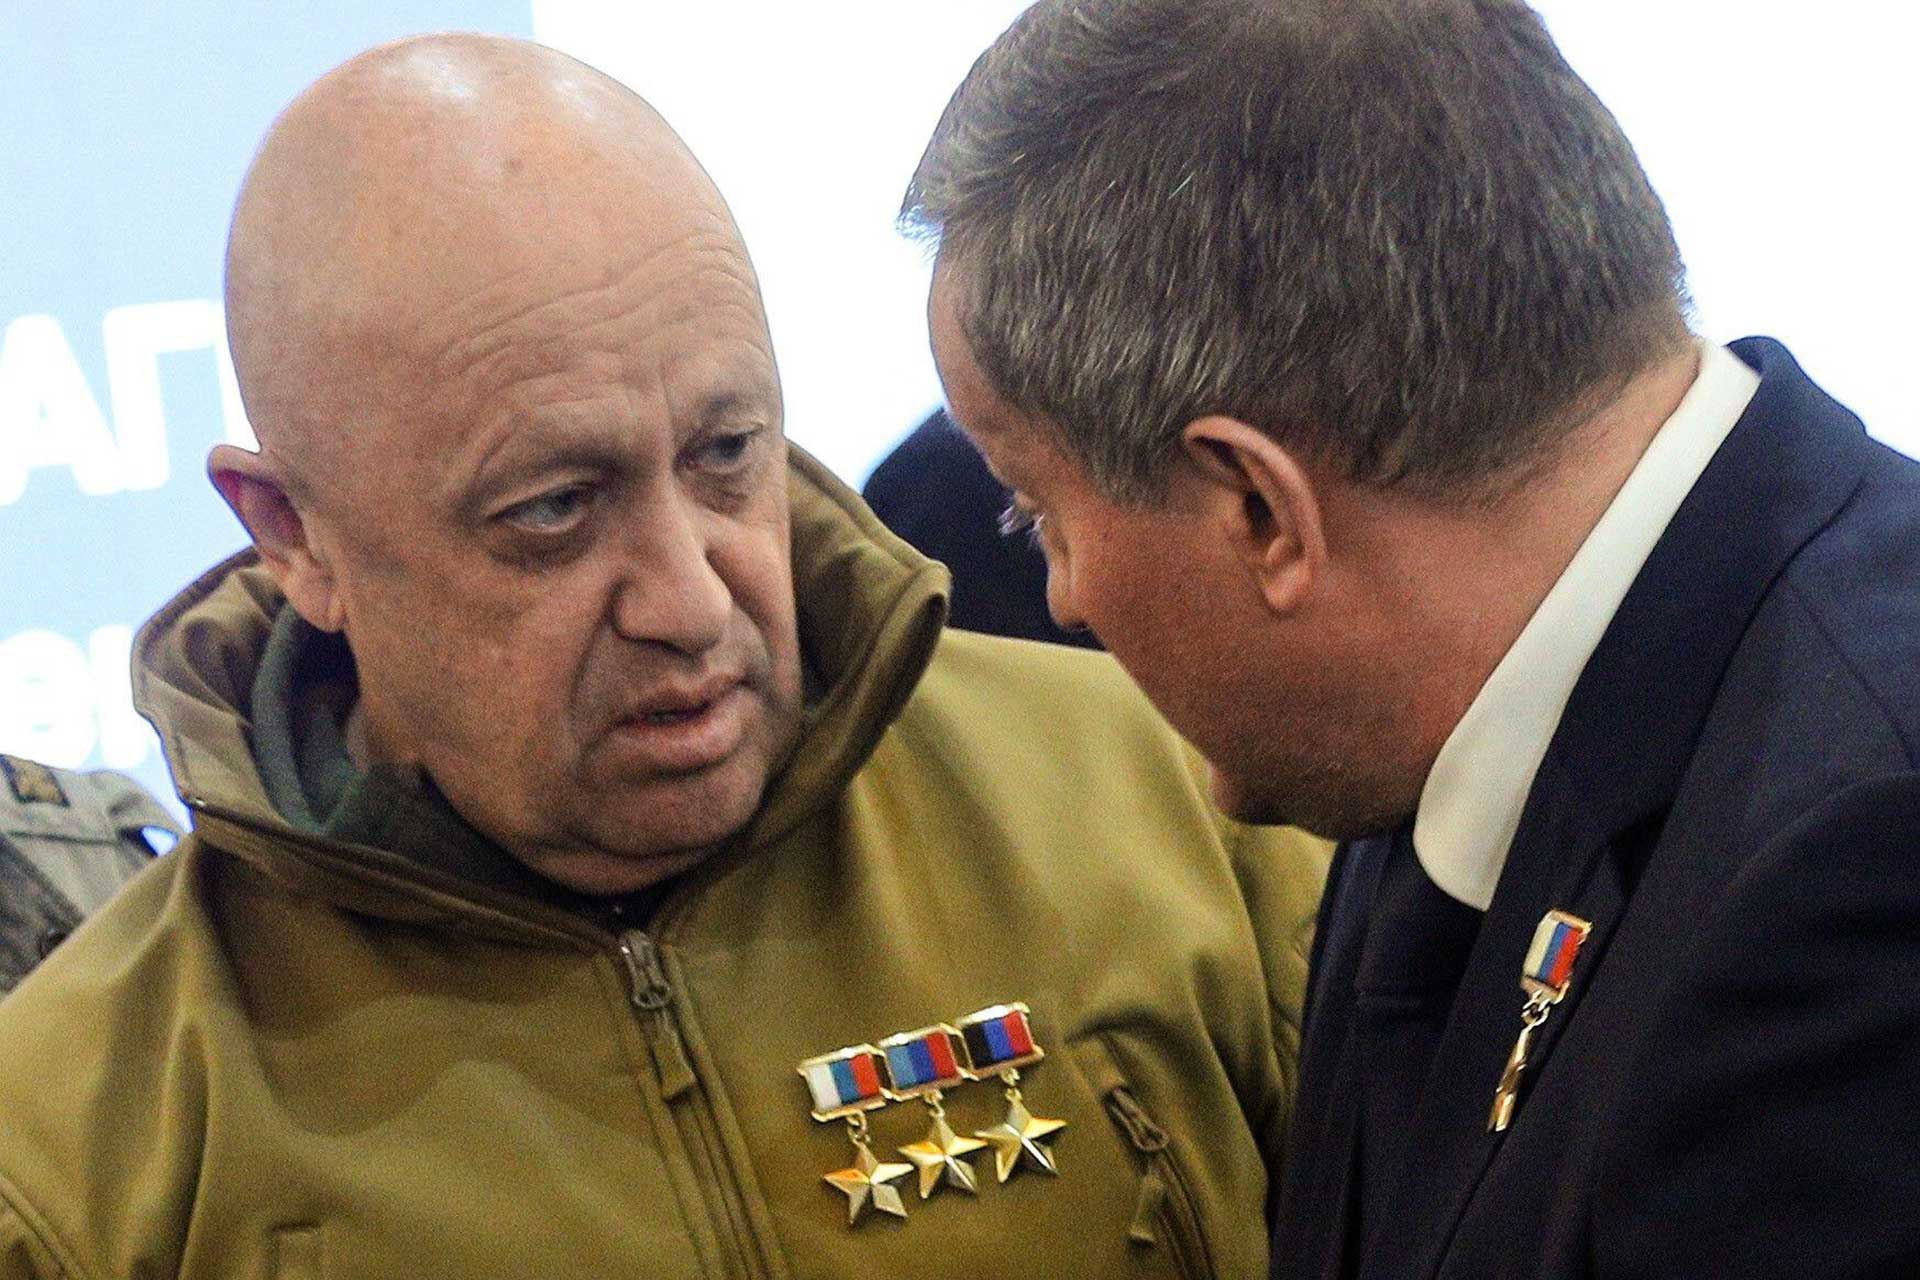 Grupo Wagner captura comandante do Exército russo, Guerra na Ucrânia